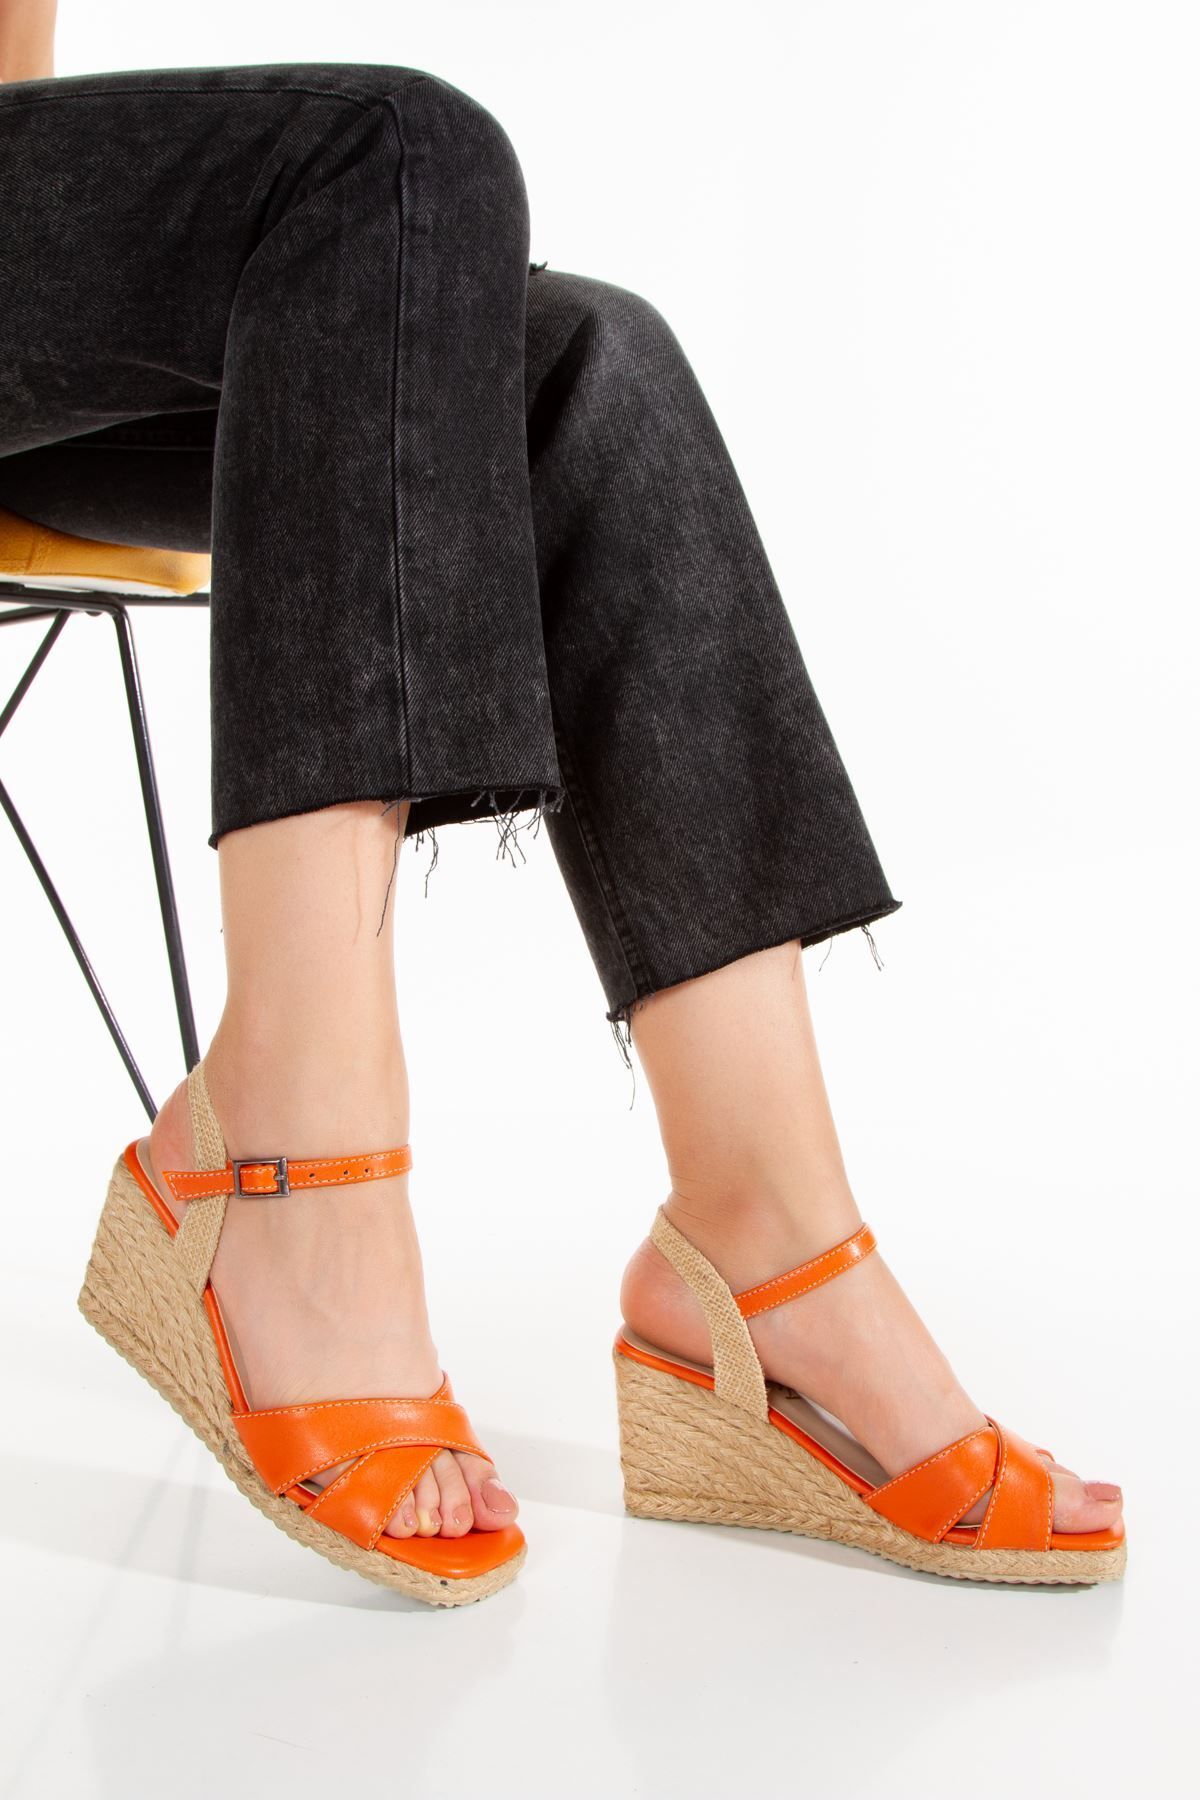 derithy Exclusive Hasır Jut Sargılı Dolgu Topuklu Yazlık Sandalet Ayakkabı -dsr0302-orange